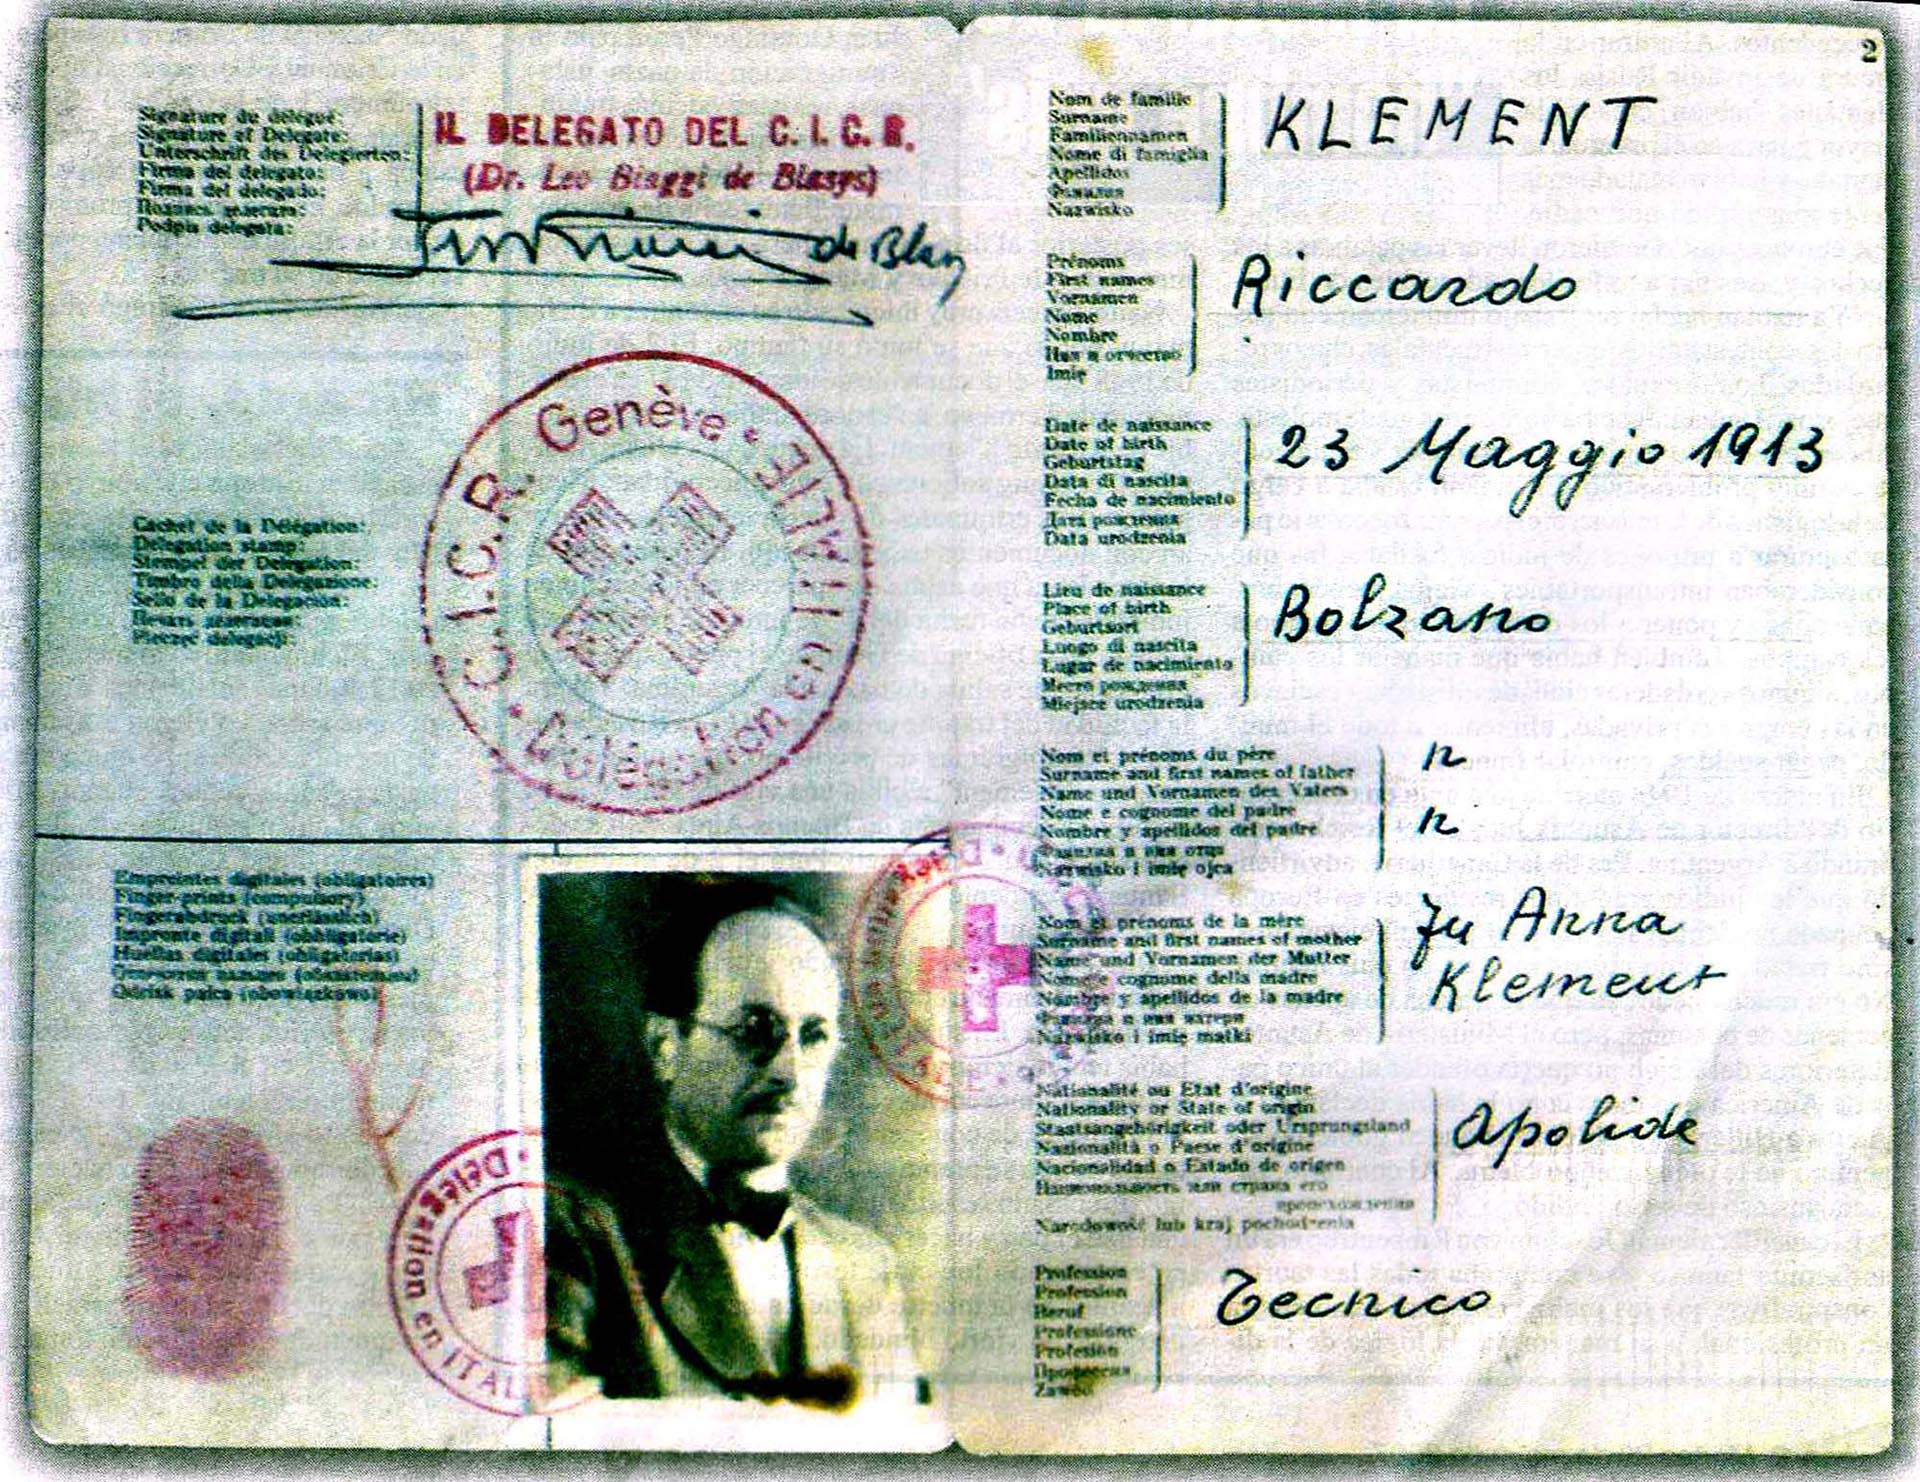 El pasaporte de Ricardo Klement, nombre que usaba Adolf Eichmann para ocultar su verdadera identidad (AFP)